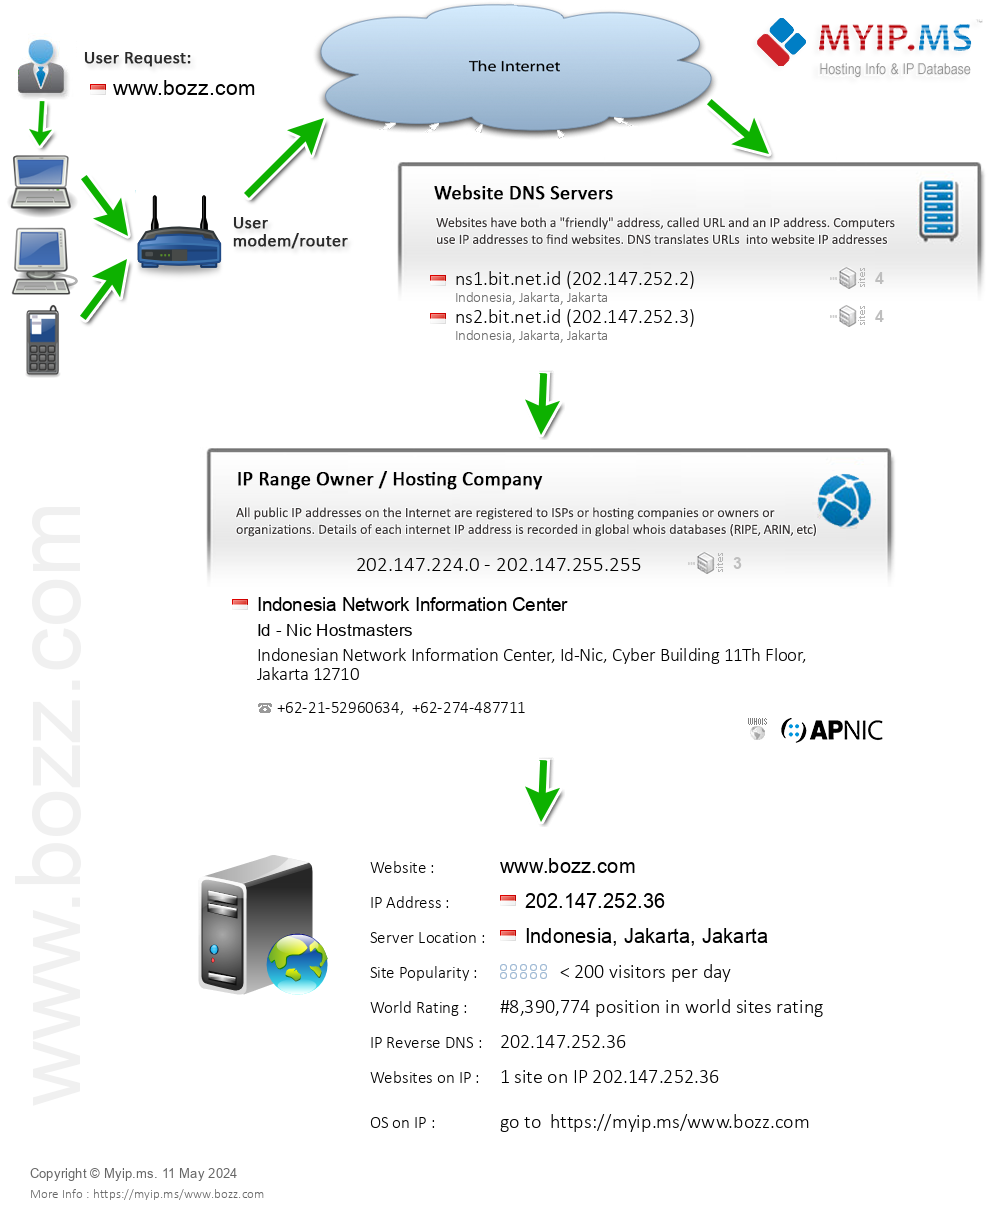 Bozz.com - Website Hosting Visual IP Diagram